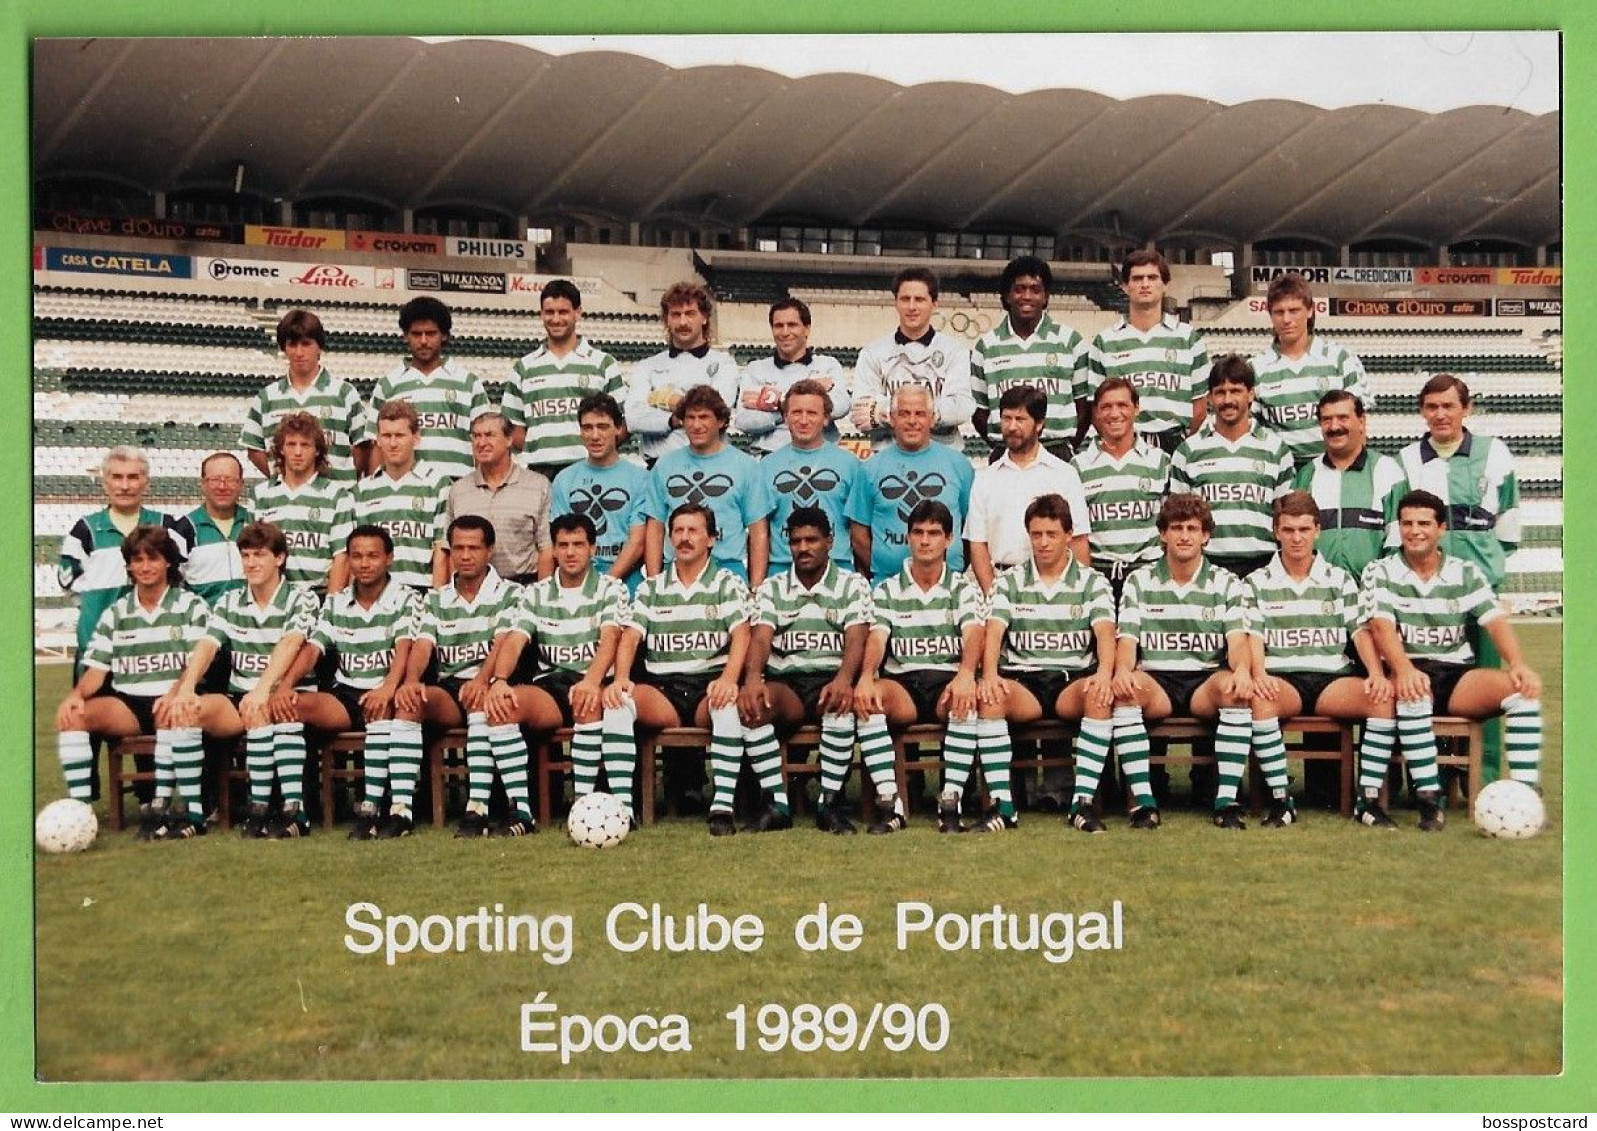 Lisboa - REAL PHOTO - Equipa De Futebol Do Sporting Clube De Portugal - Estádio - Football - Stadium - Portugal - Soccer